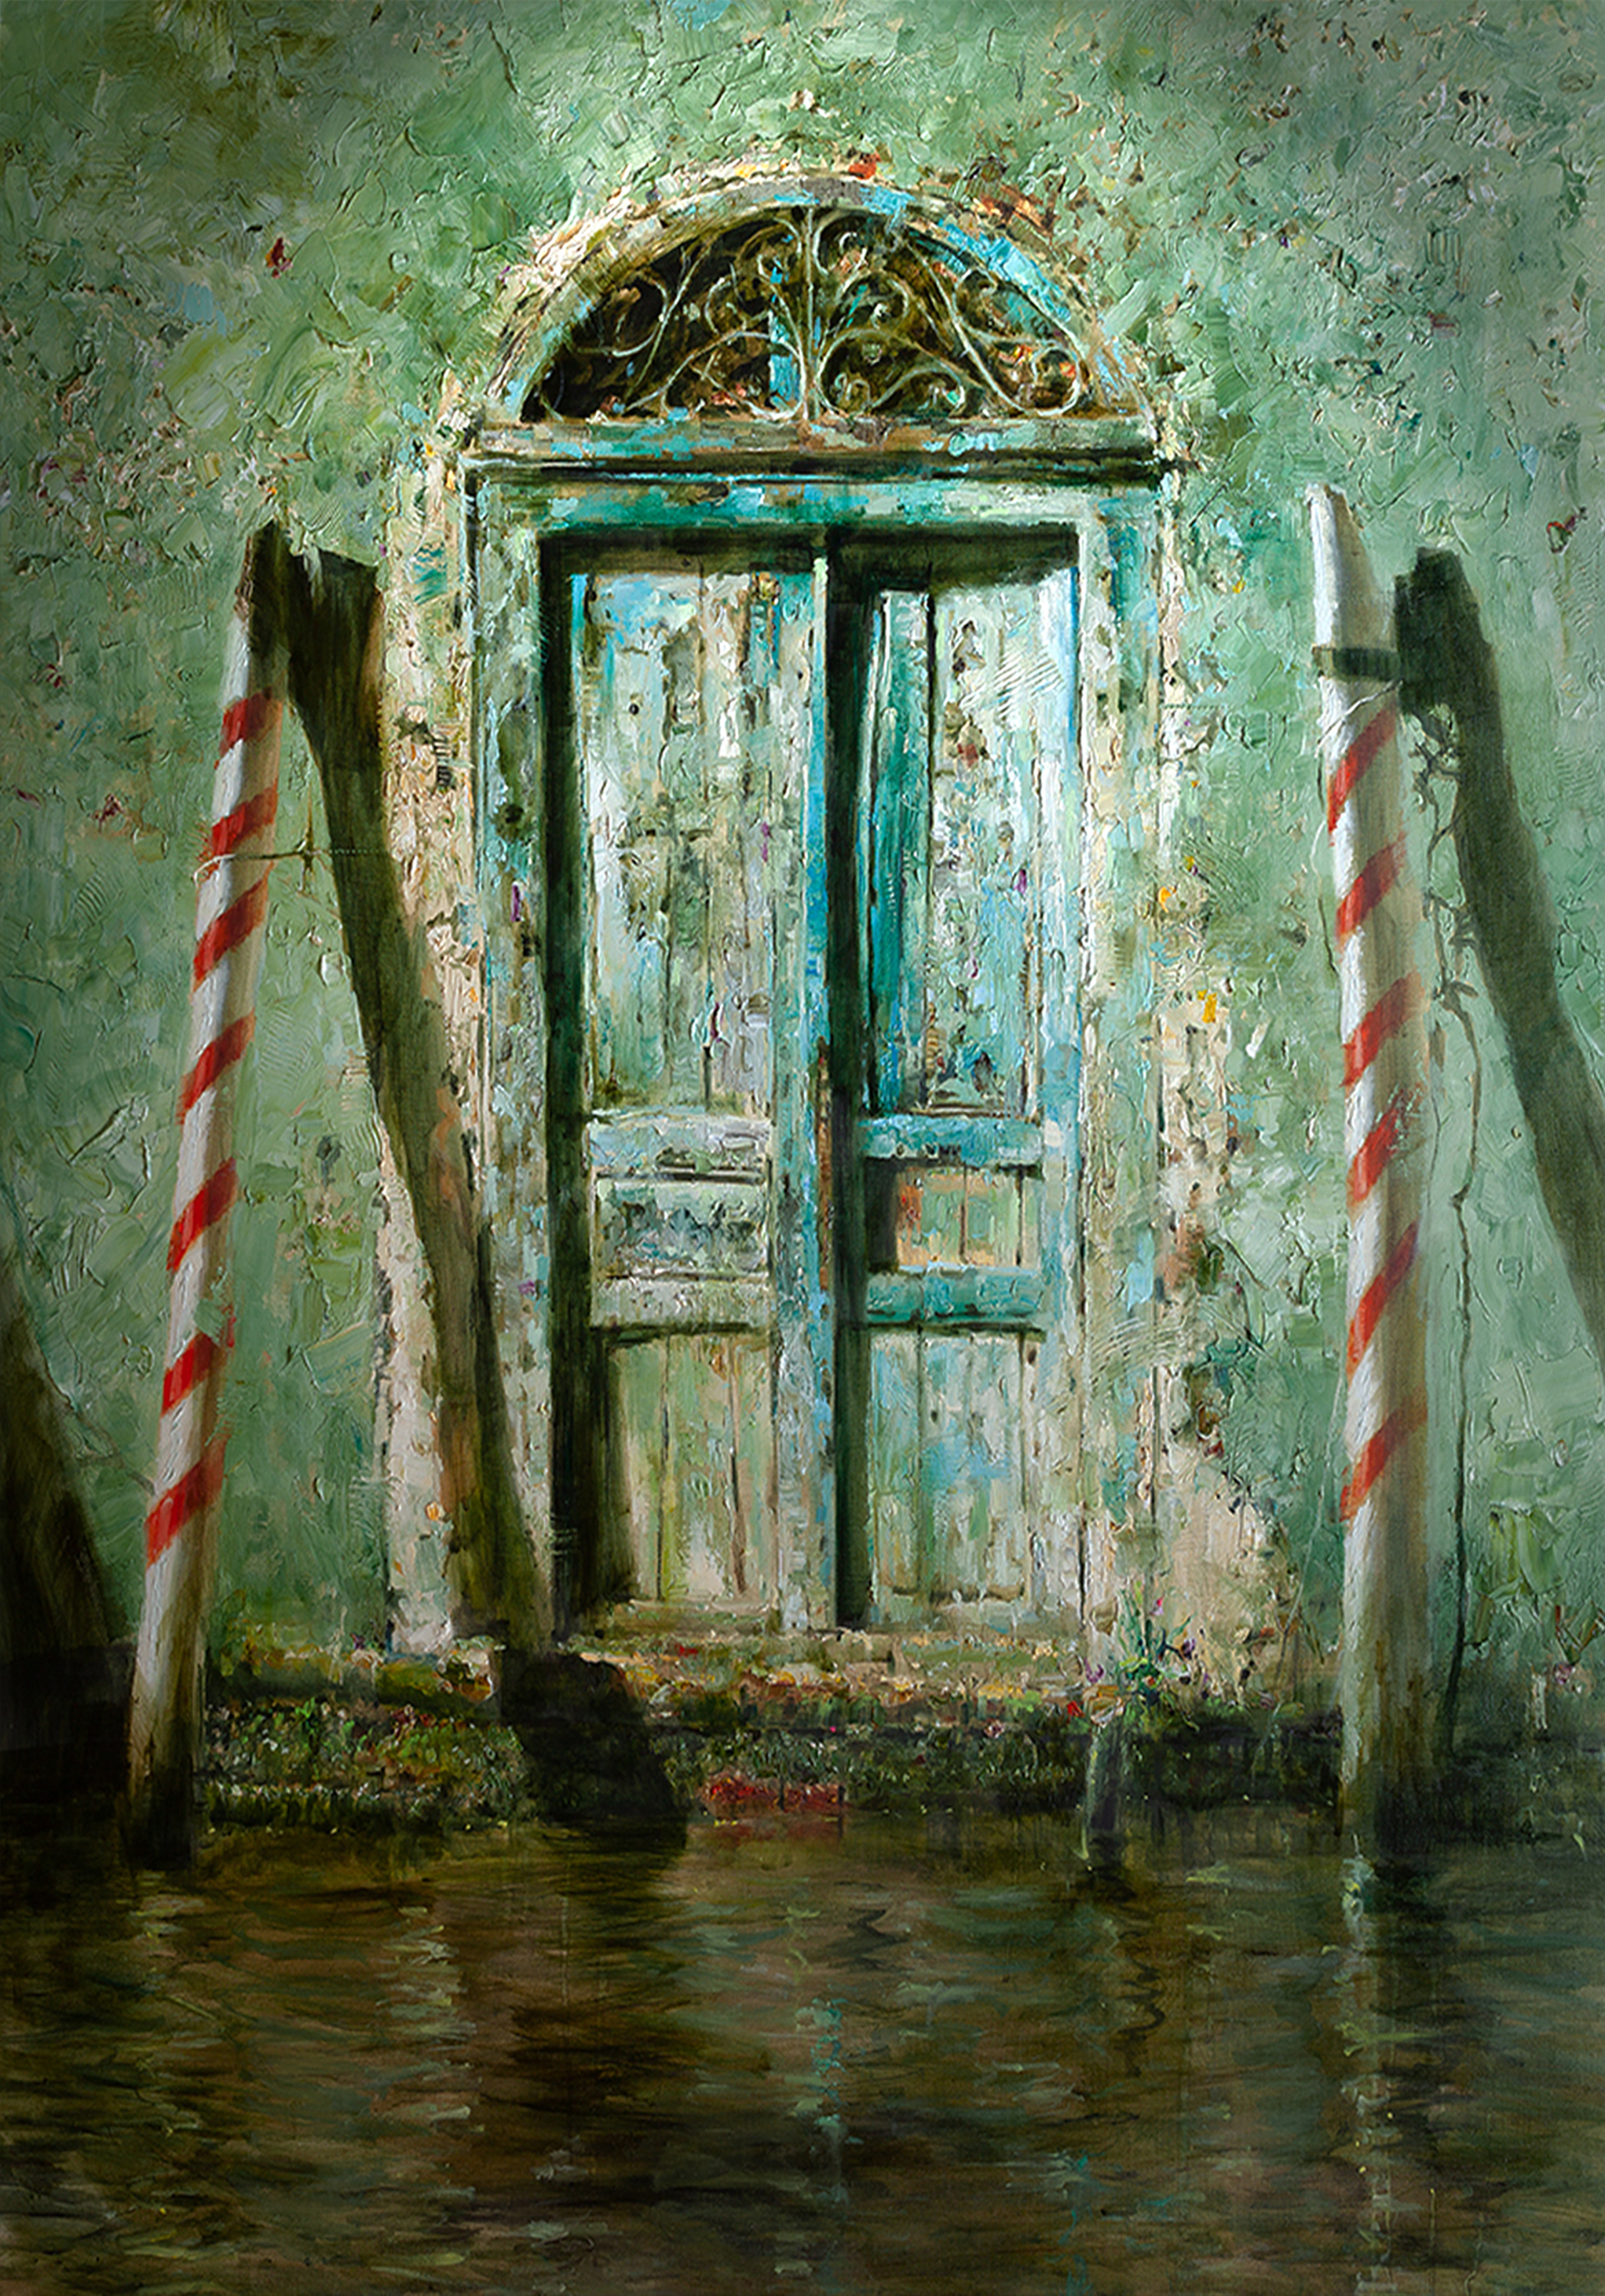 "Old Door" by Oleg Trofimov